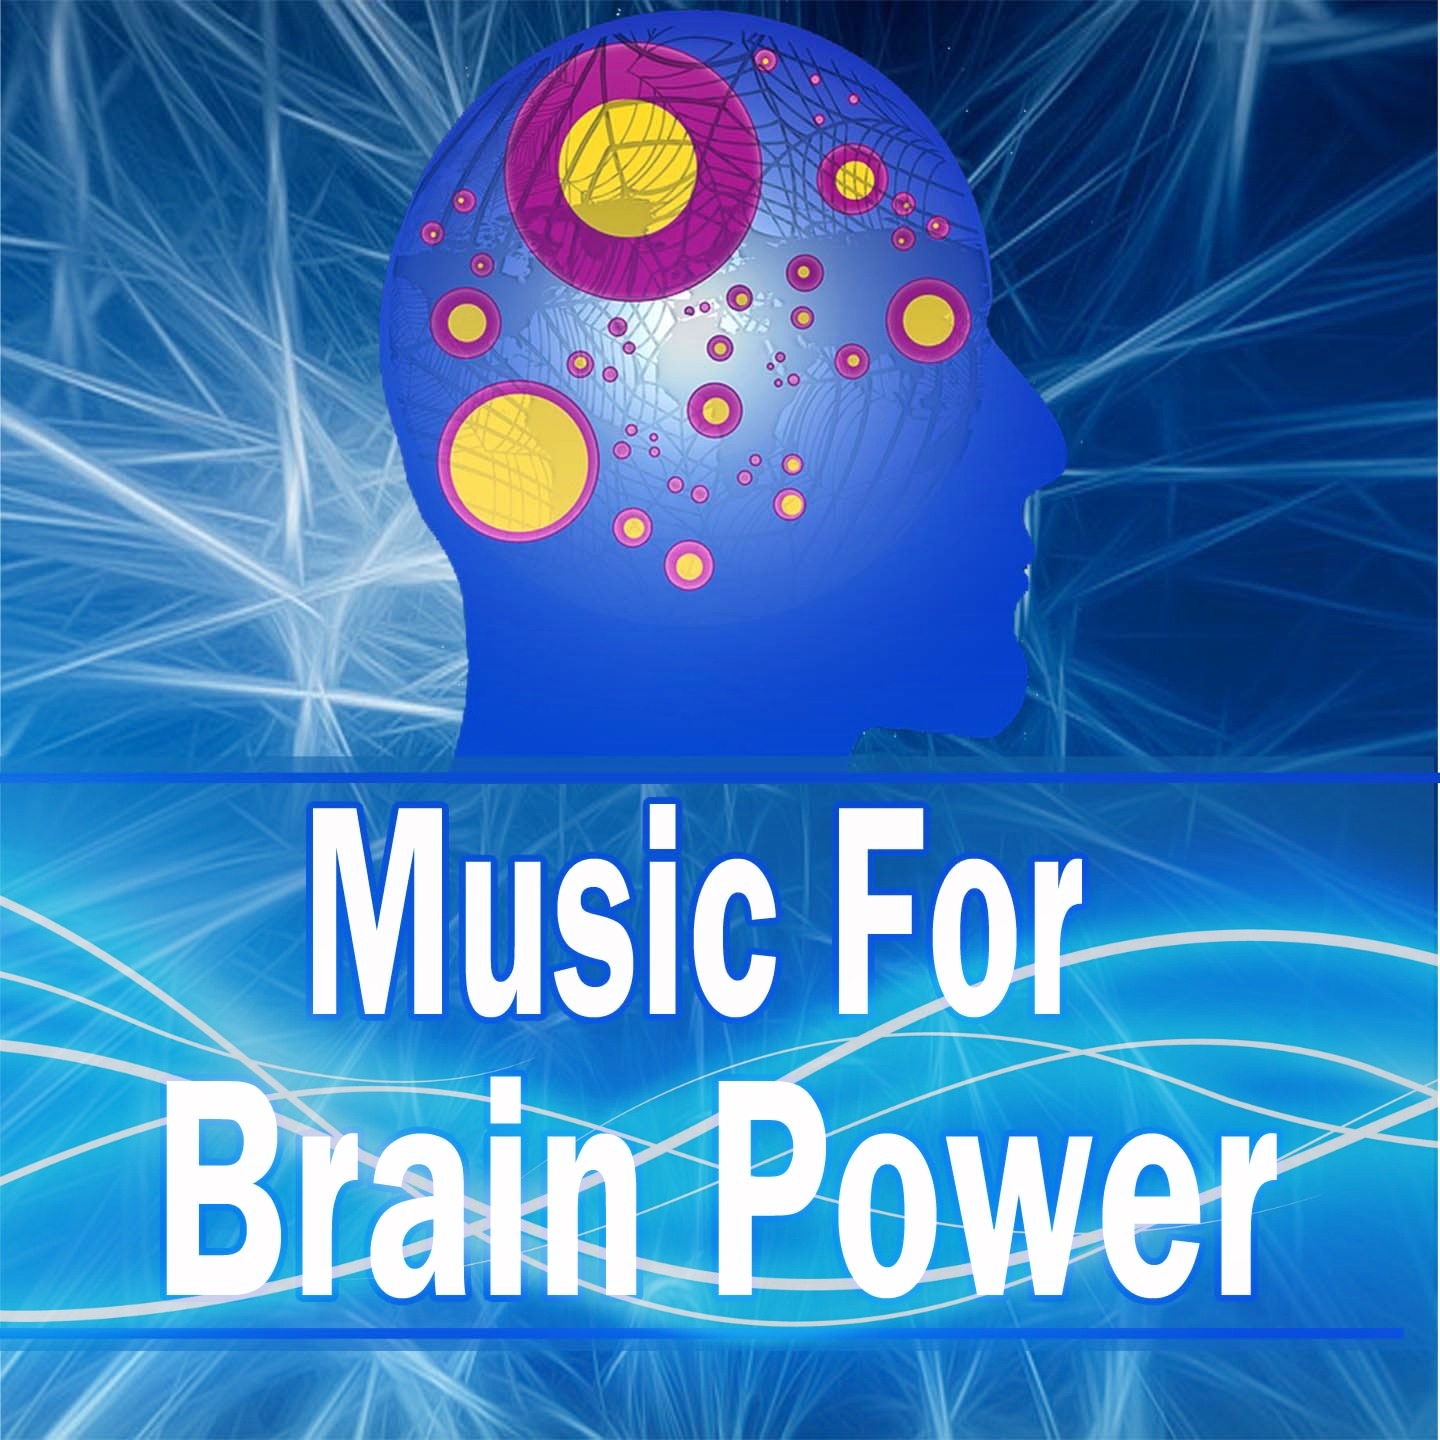 Music for Brain Power